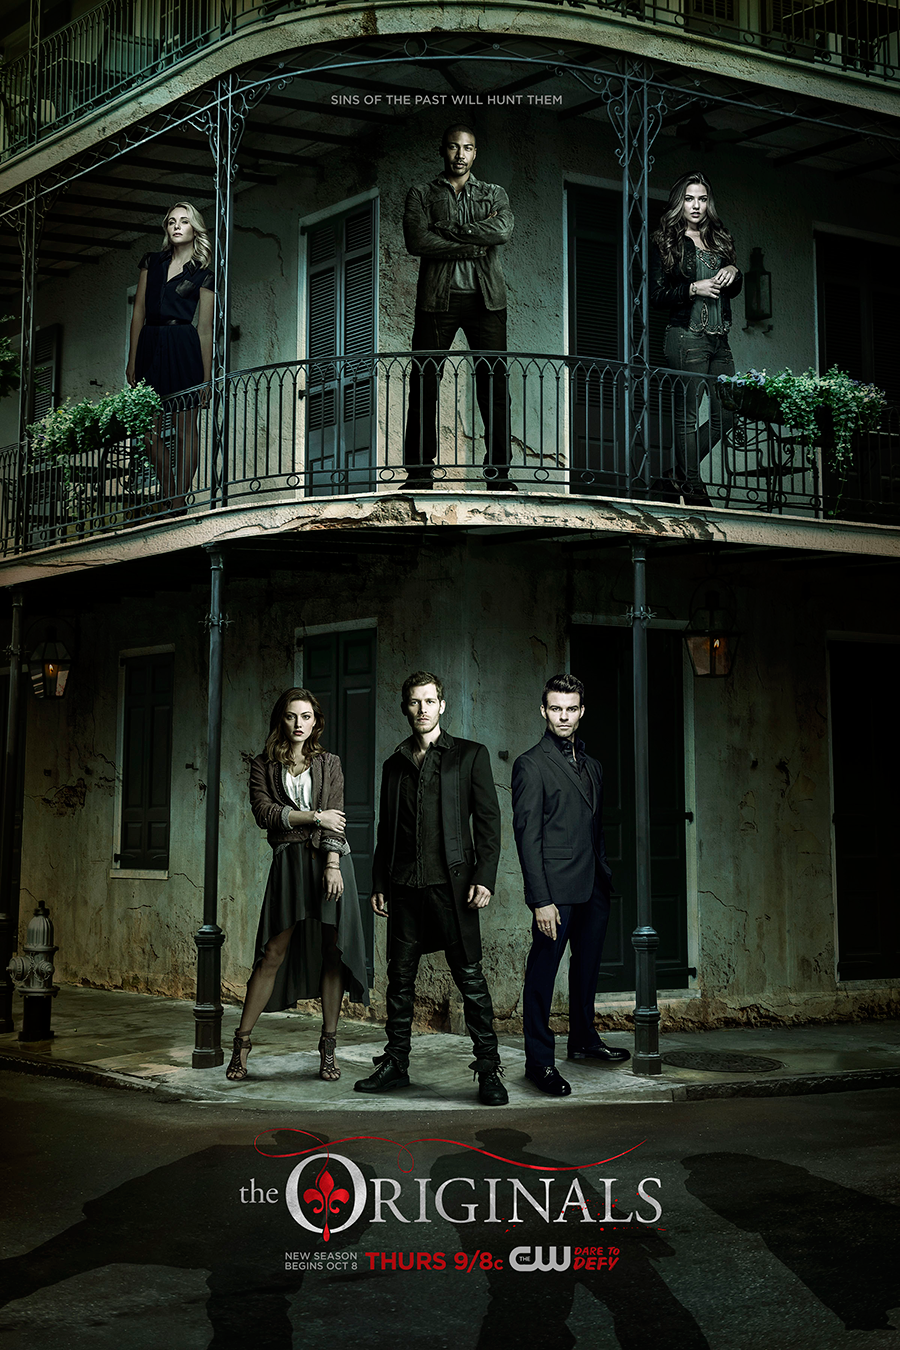 The Originals  Vampire diaries cast, Vampire diaries poster